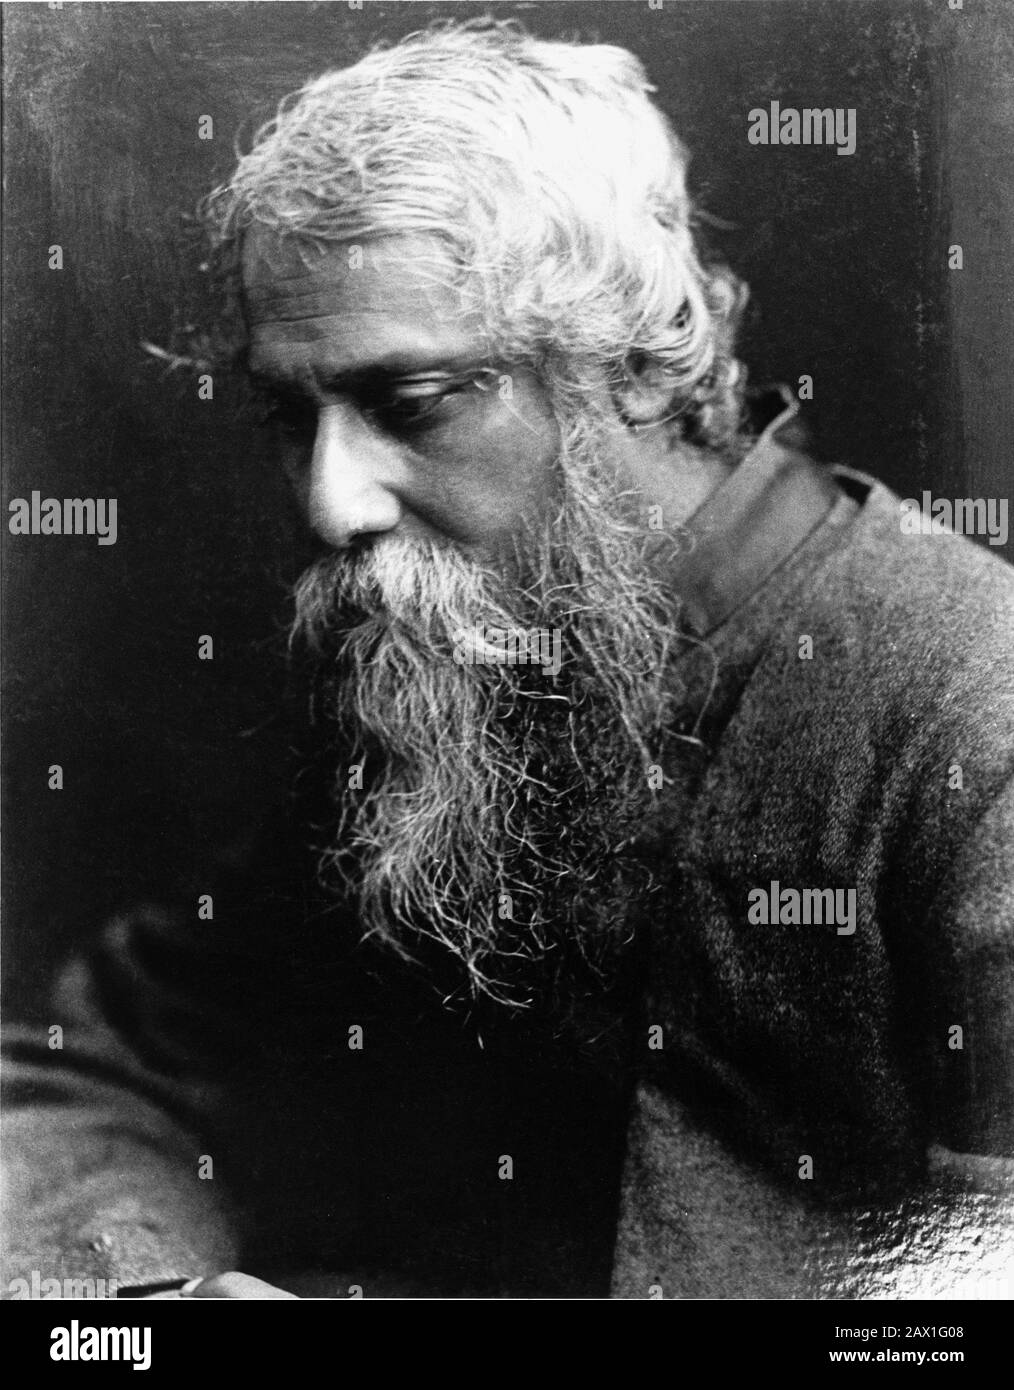 1913 ca , USA :The celebrated indian poet and writer Rabindranath TAGORE ( Calcutta 1861 - 1941 ) , awarded with Nobel for Literature in 1913   - LETTERATO - SCRITTORE - LETTERATURA - Literature  - POESIA - POETRY - POET - POETA - portrait - ritratto  - PREMIO NOBEL LETTERATURA  ancient older man - uomo anziano vecchio - bear - barba  ---- Archivio GBB Stock Photo